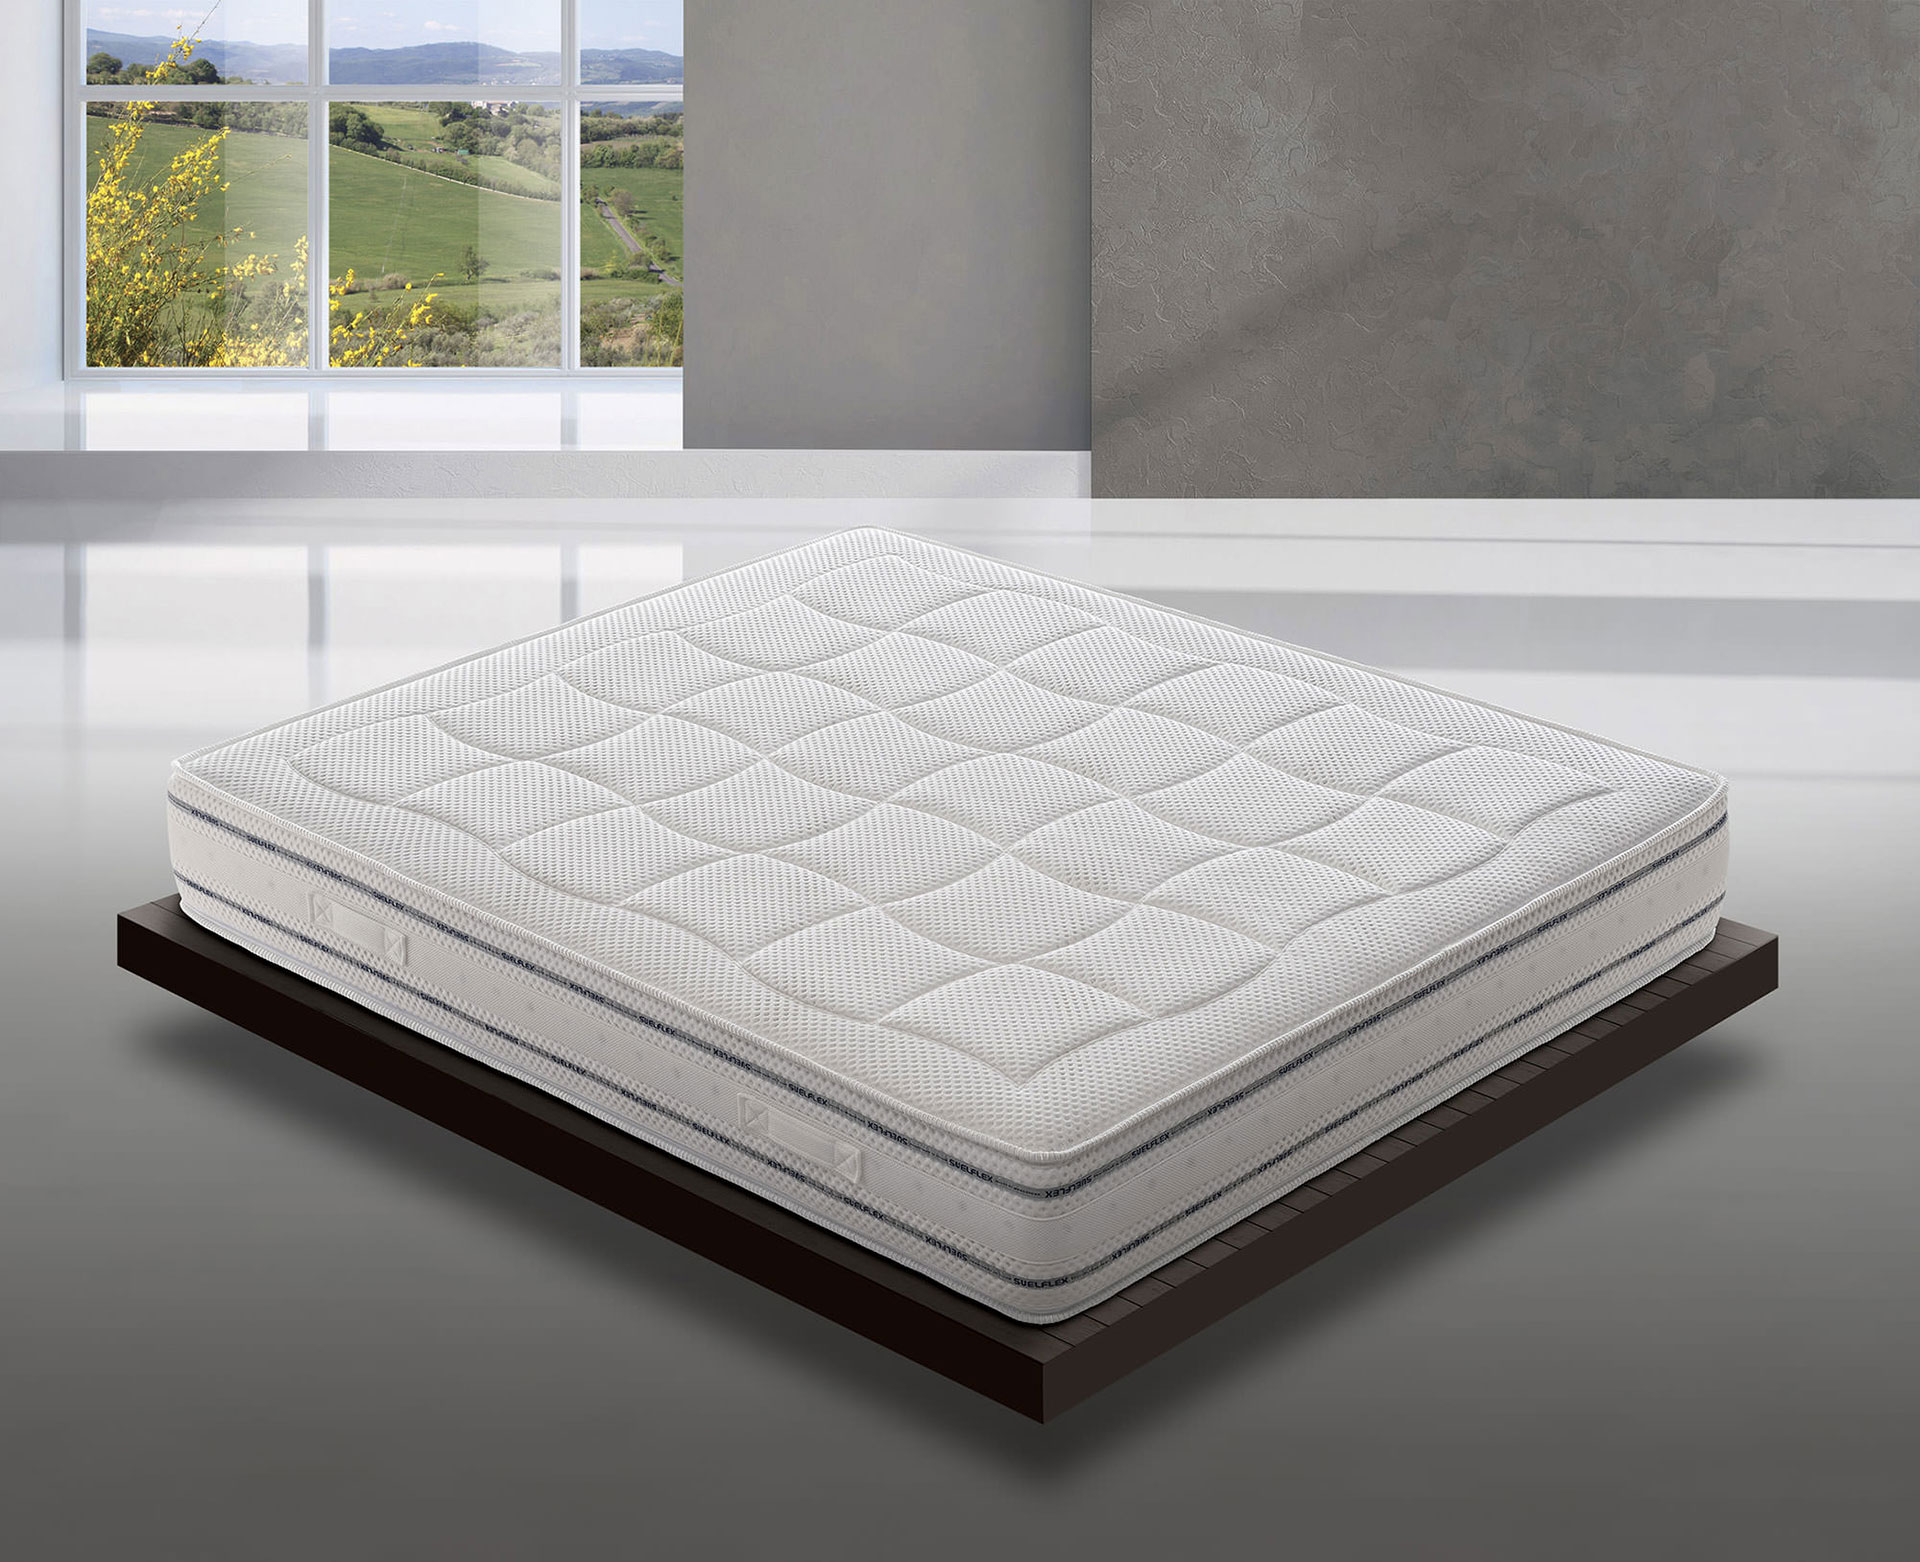 Comfort Collection - Suelflex Materassi di benessere - Molle Insacchettate - Molle Bonnel  materasso ventilato materassi jolly materasso 